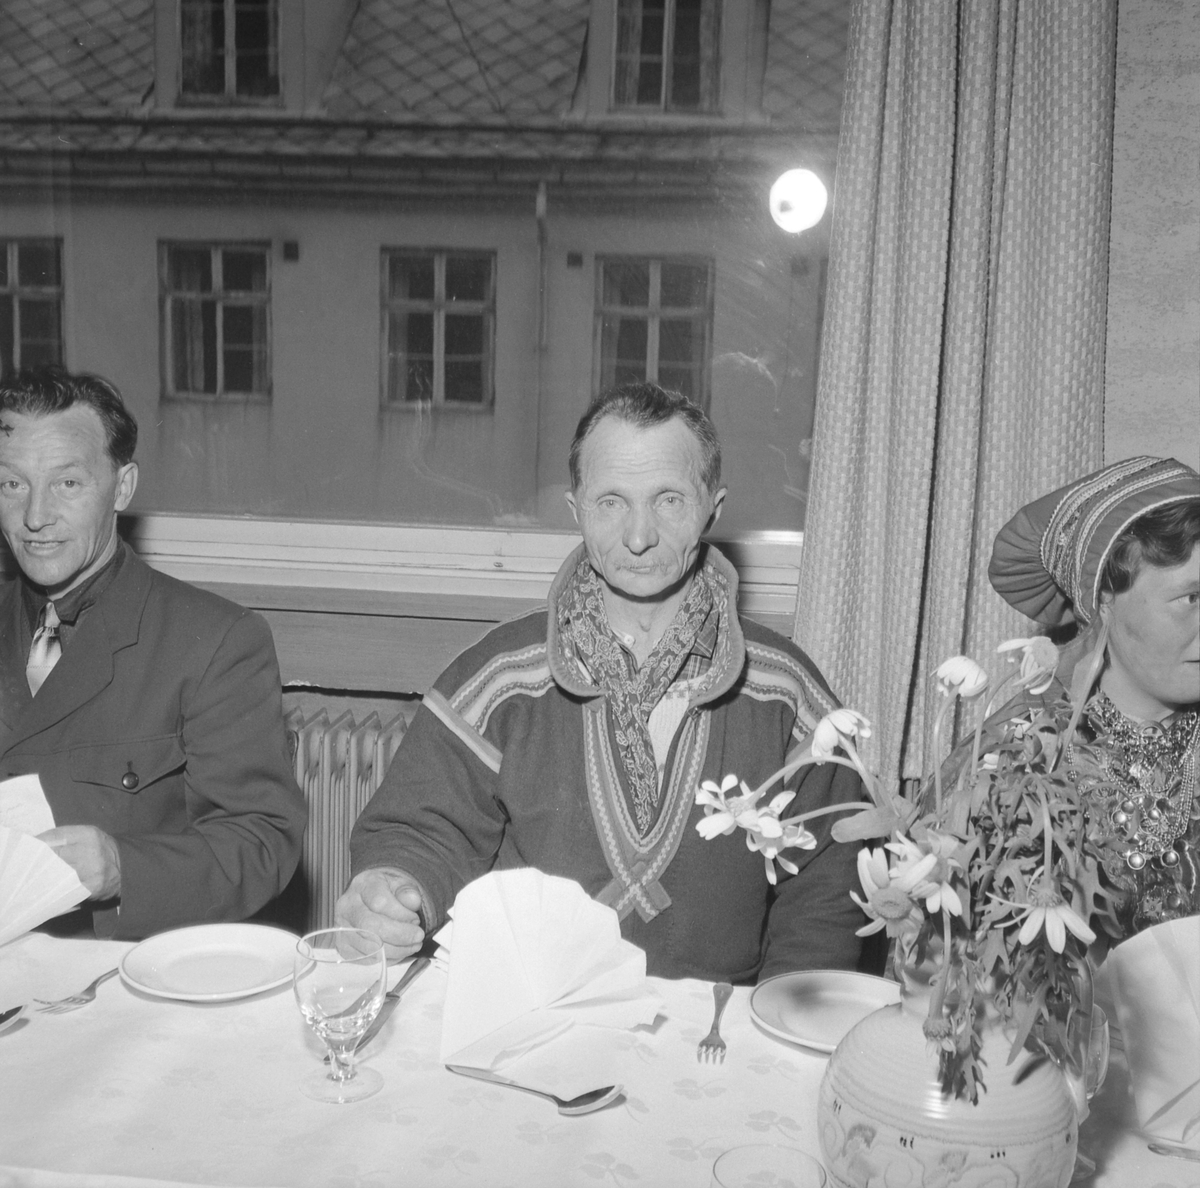 Samenes festmiddag i Folket Hus  i forbindelse med landsmøtet i Trondheim 1957